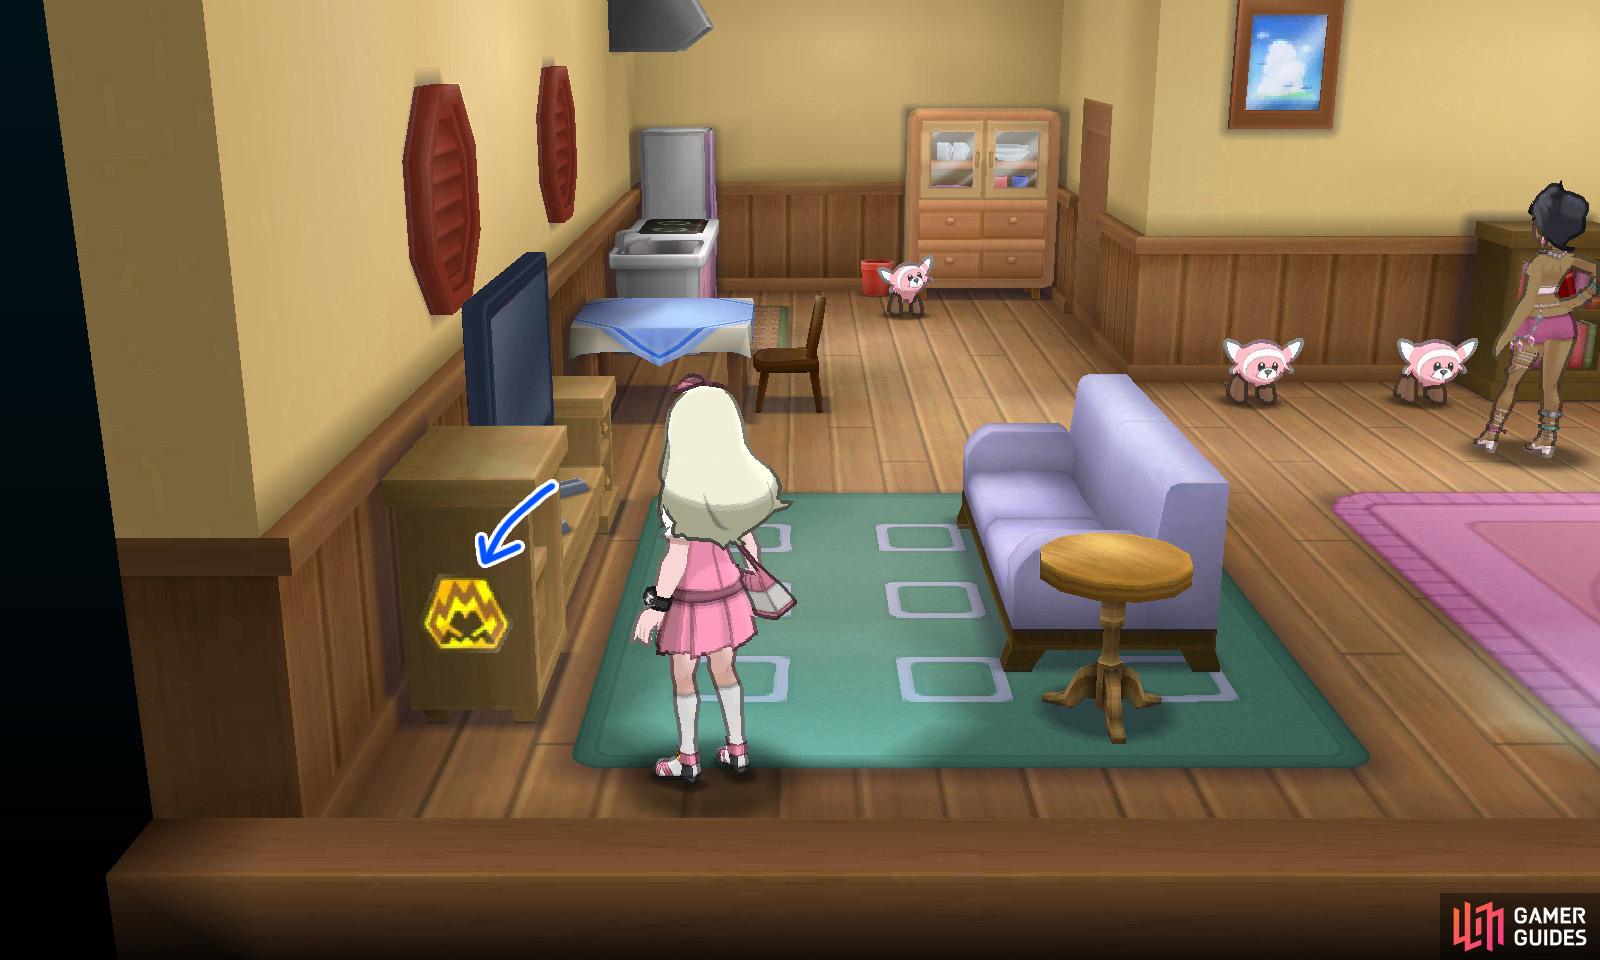 043: Bottom left corner of Olivia's bedroom in her shop.